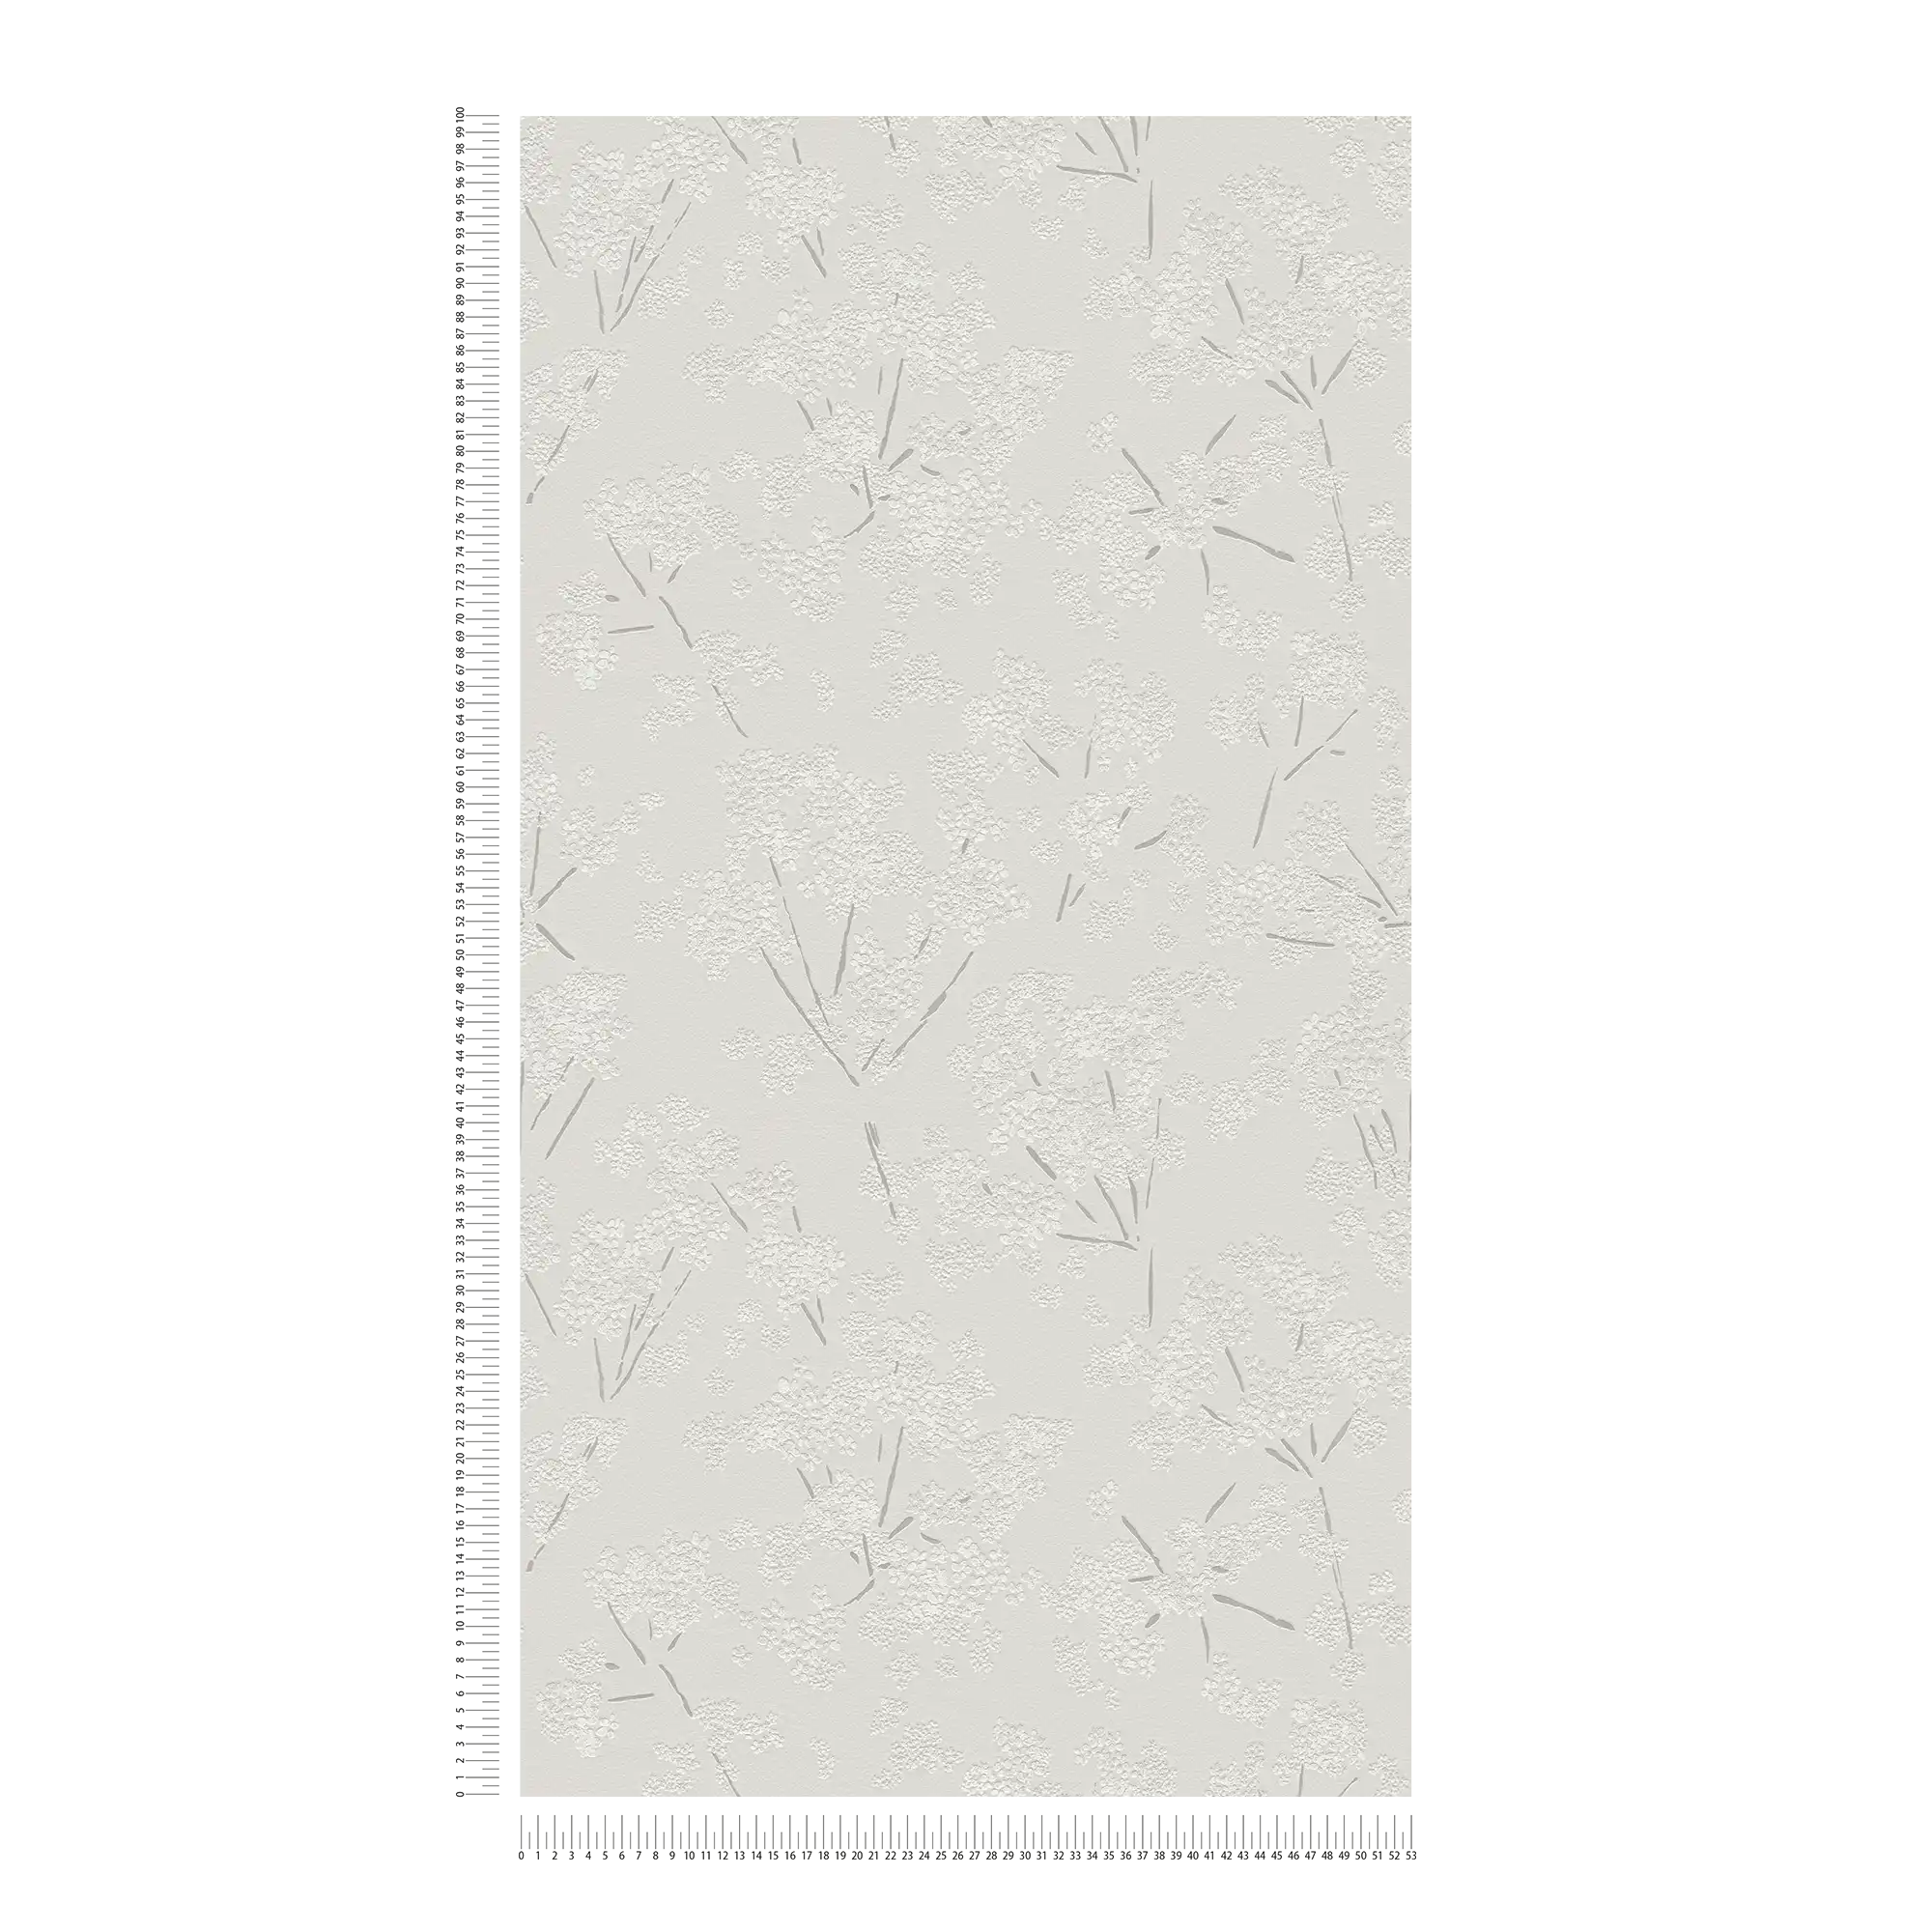             Vliesbehang met abstract bloemenpatroon - grijs, wit
        